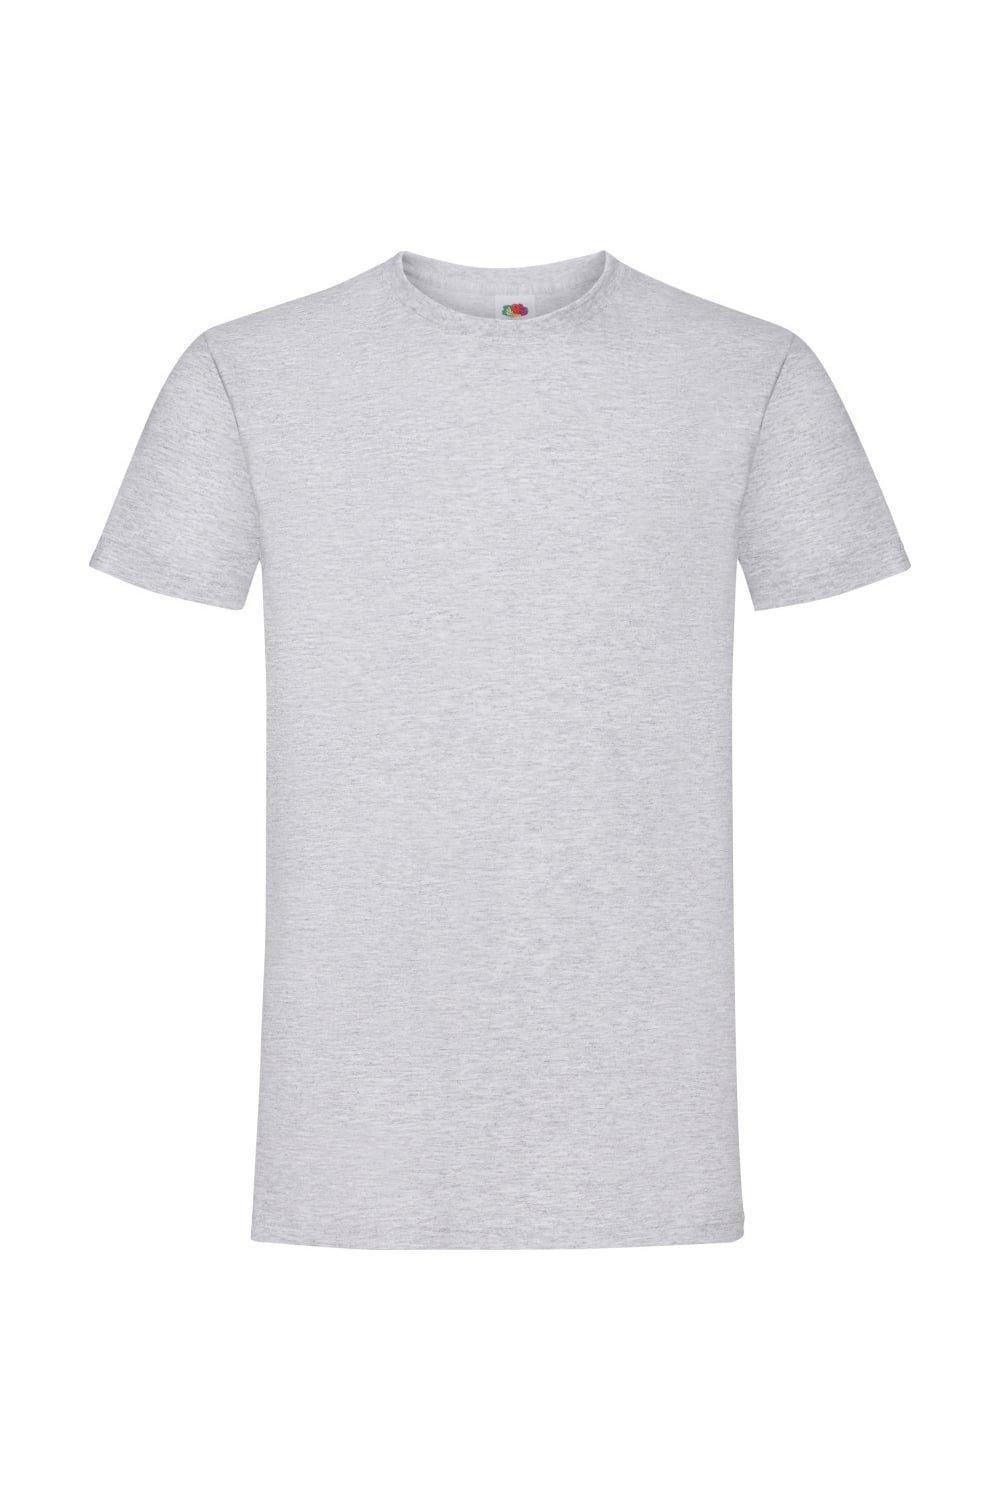 Sofspun Short Sleeve T-Shirt